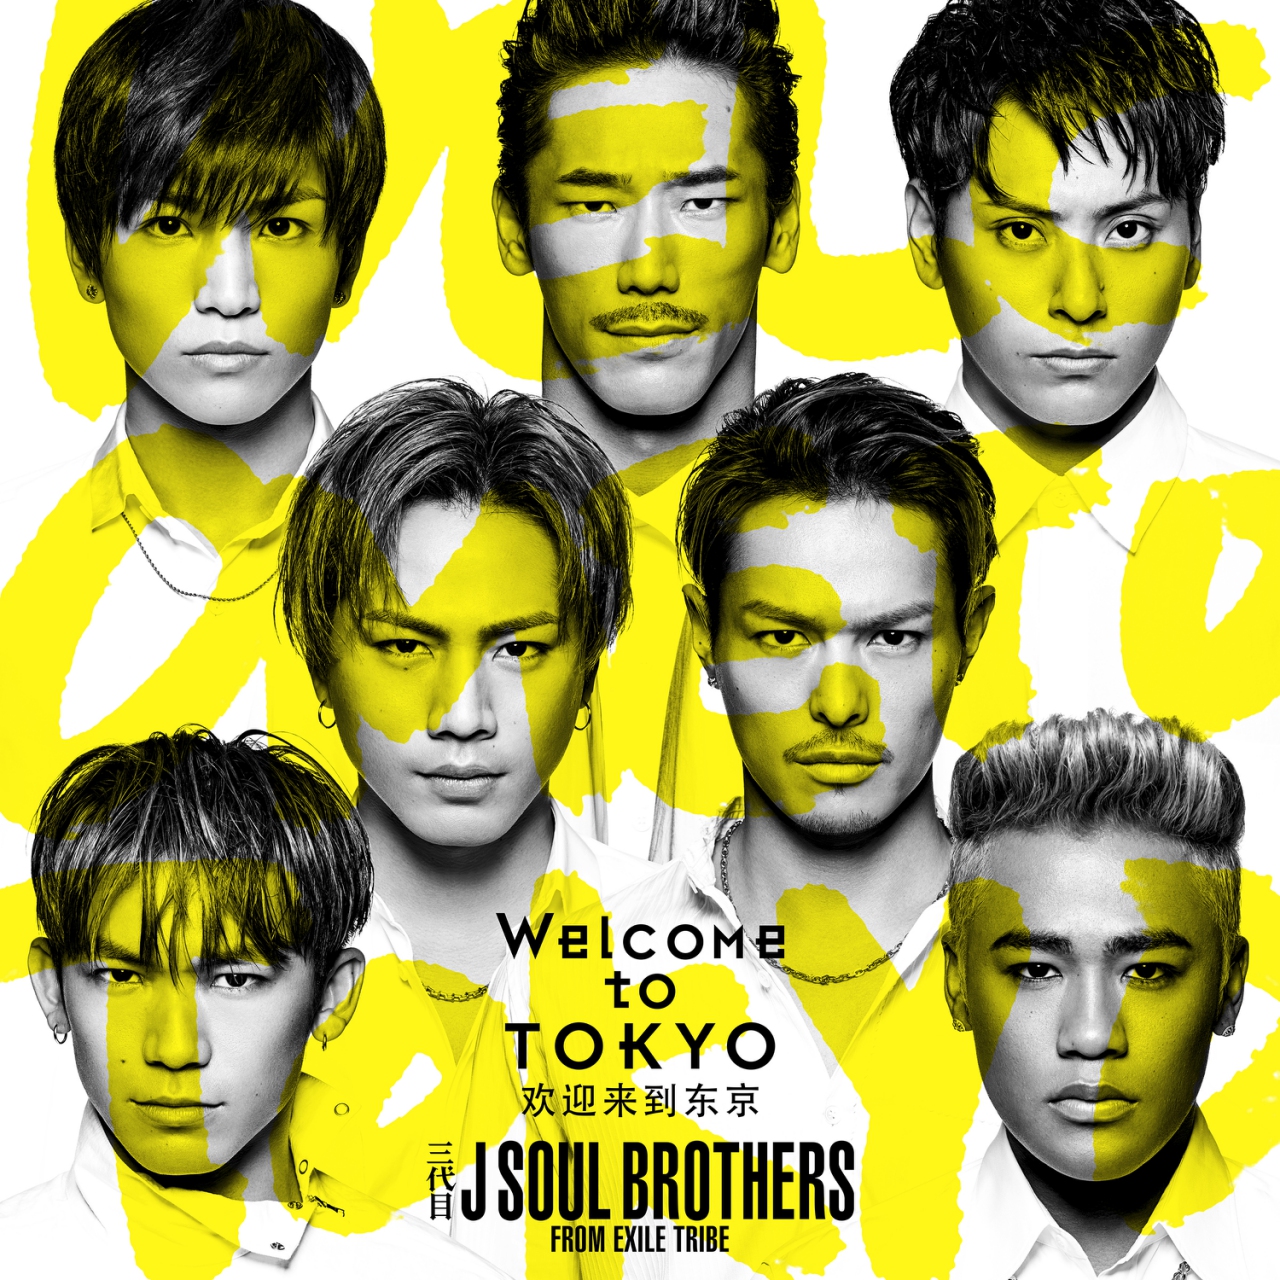 三代目J SOUL BROTHERS《Welcome To TOKYO》中国音乐配信网站J-POP获得